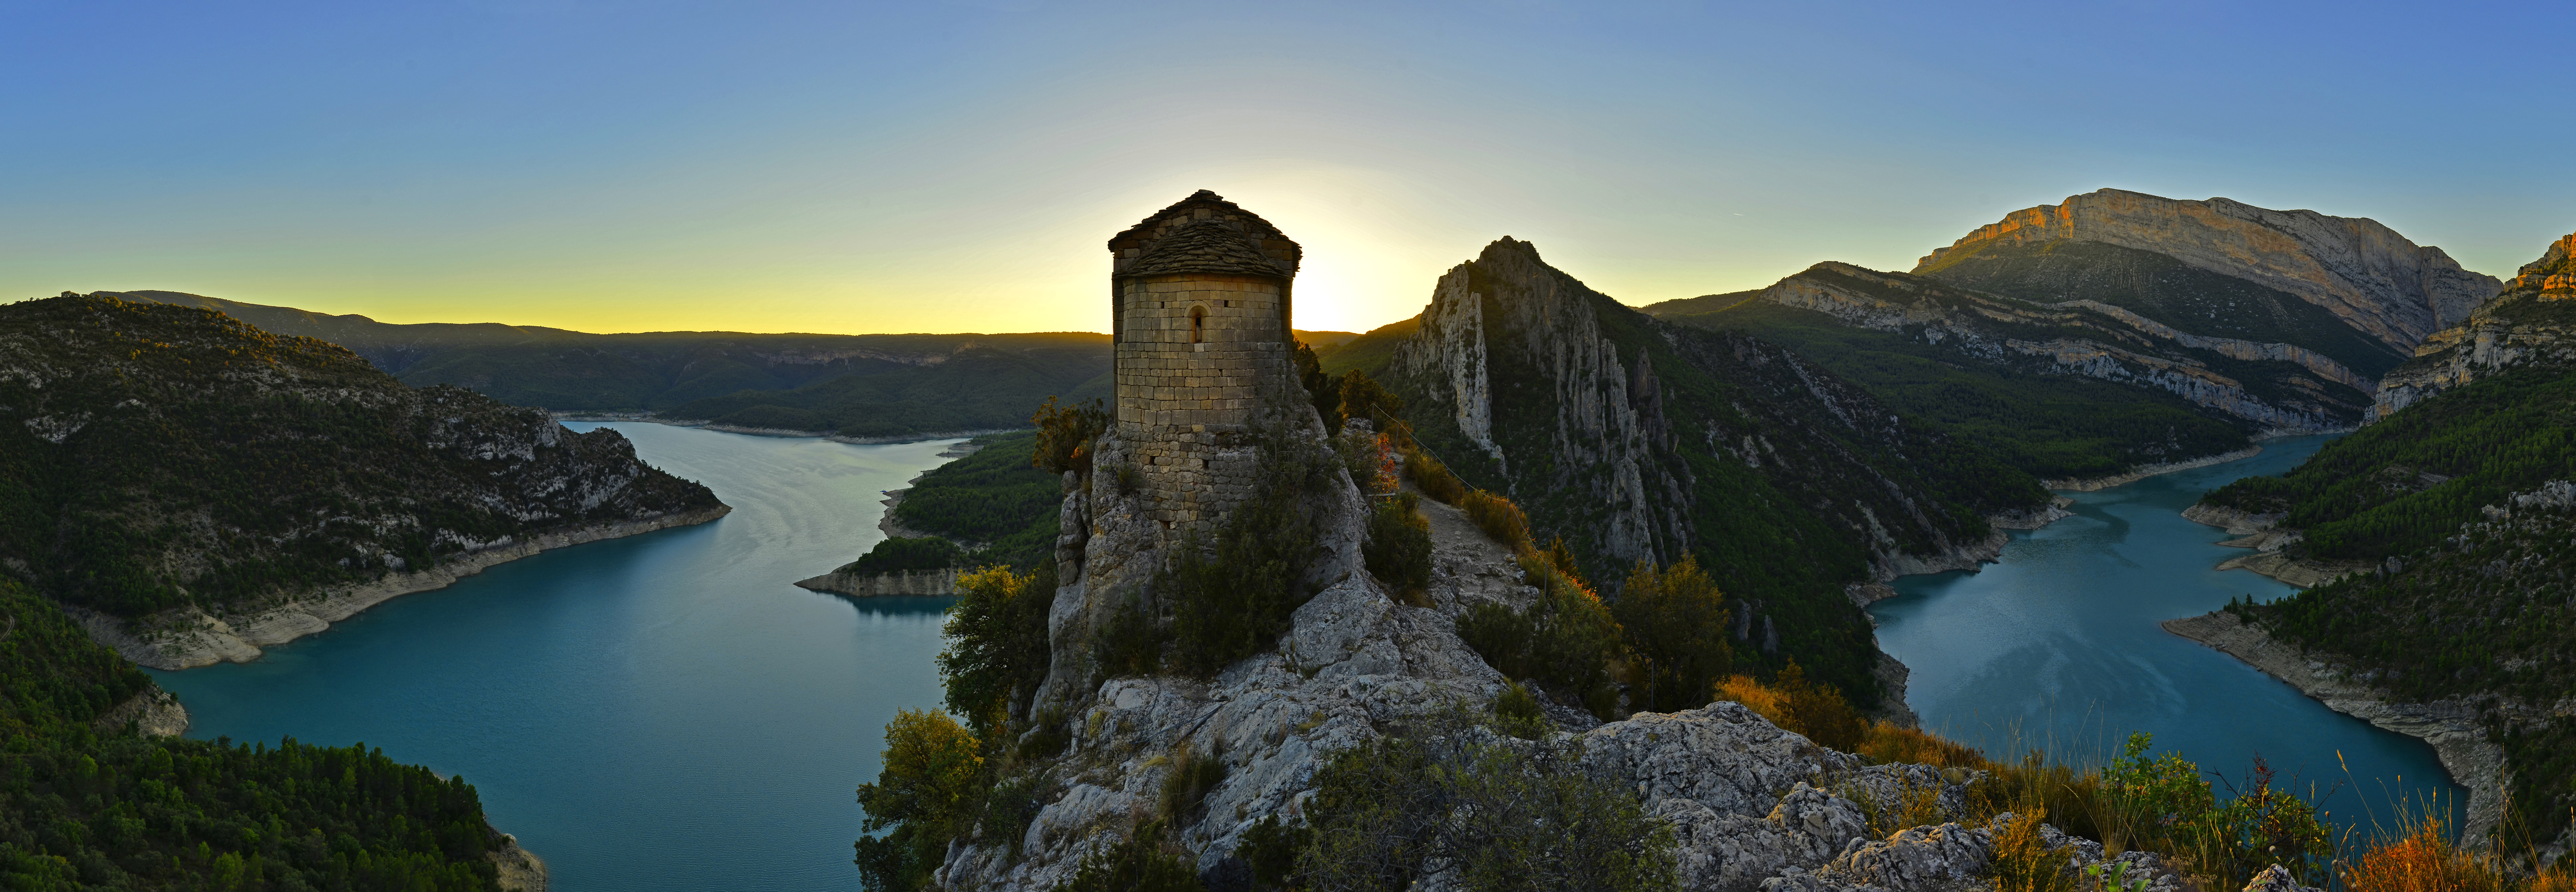 spain, photography, landscape, fortress, lake, mare de déu de la pertusa